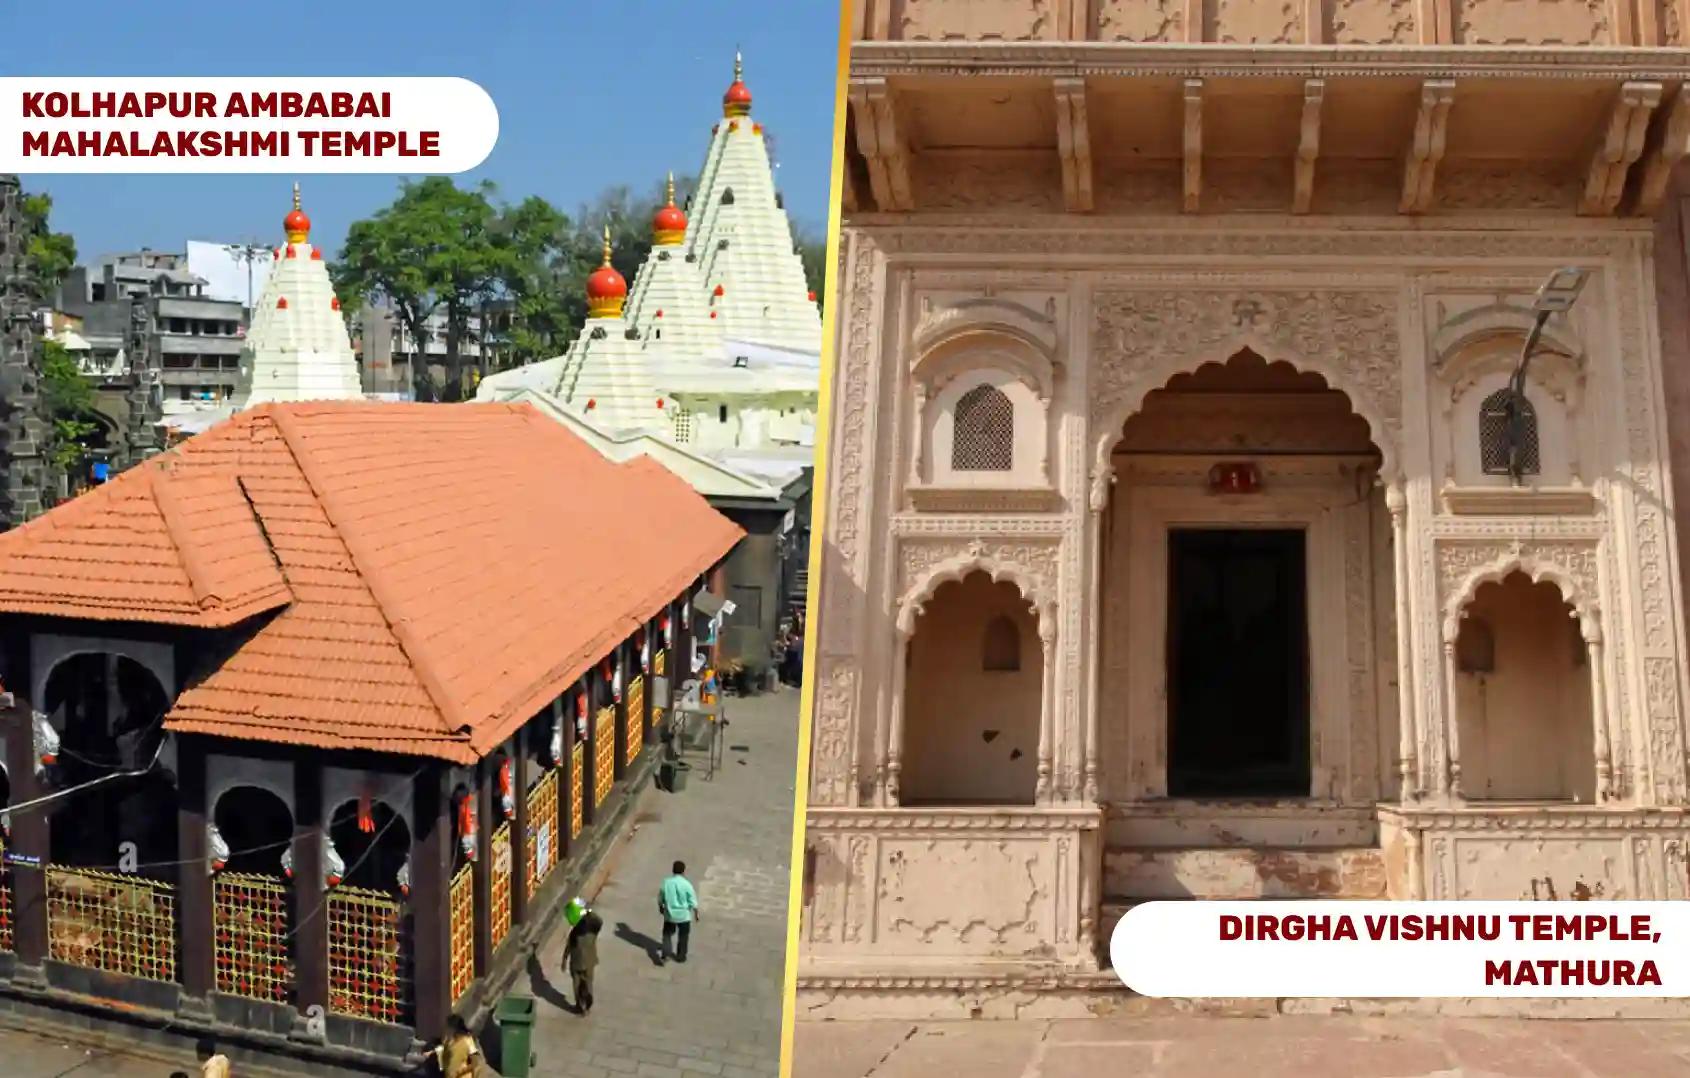 Shri Dirgh Vishnu Temple and Shaktipeeth Maa Mahalaxmi Ambabai Temple, Mathura, Kolhapur